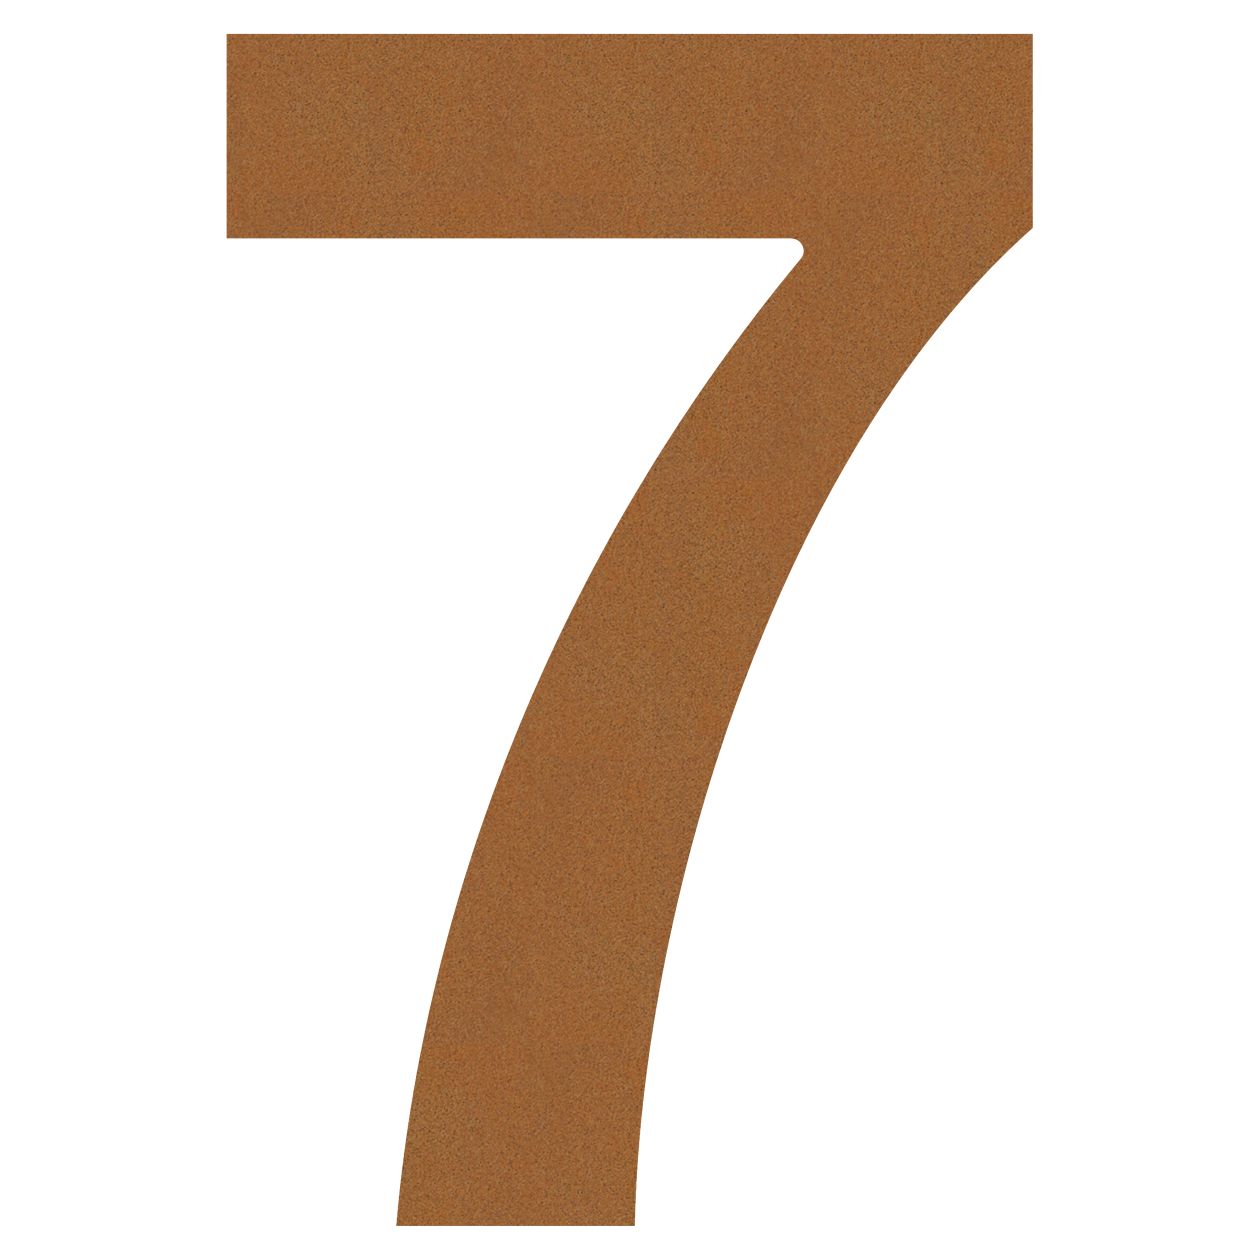 Numer na dom "7" rdza